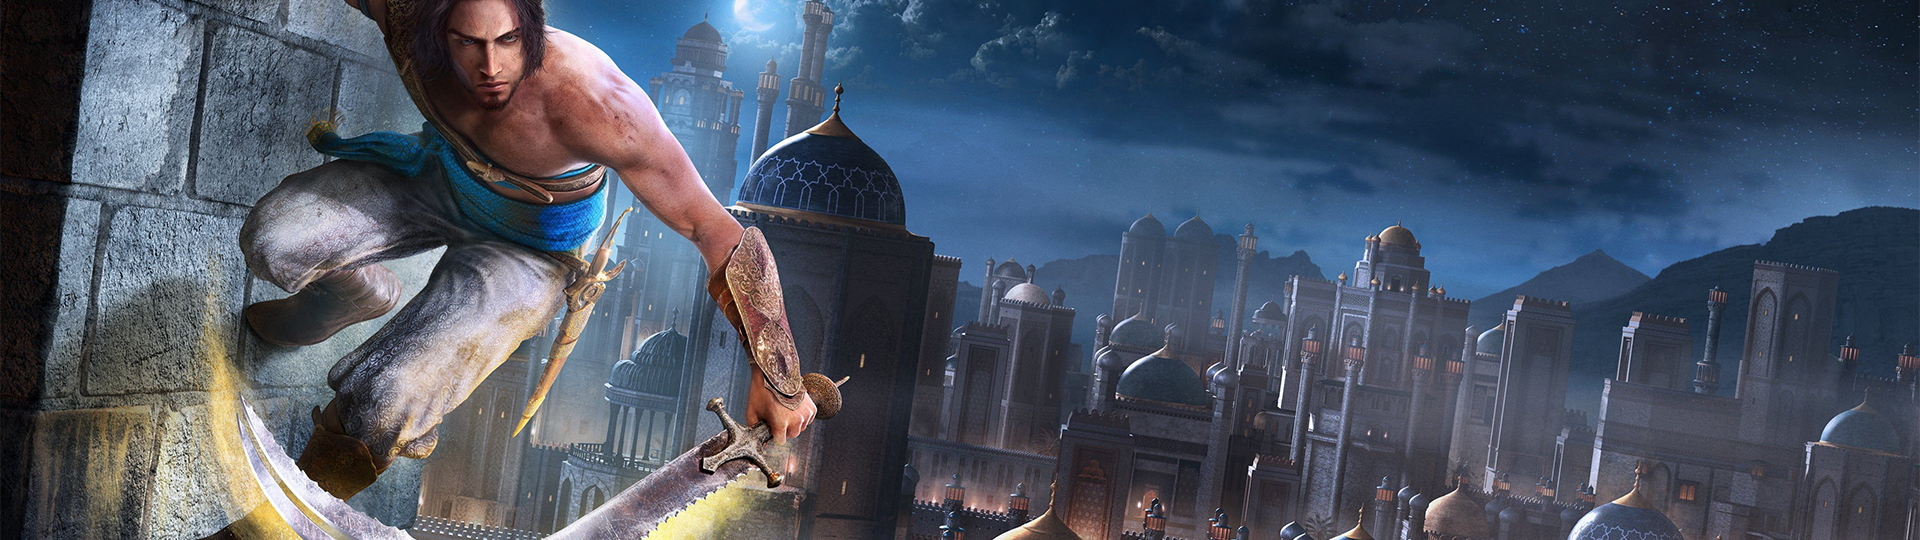 Prince of Persia: The Sands of Time Remake hlasí další zpoždění | Novinky